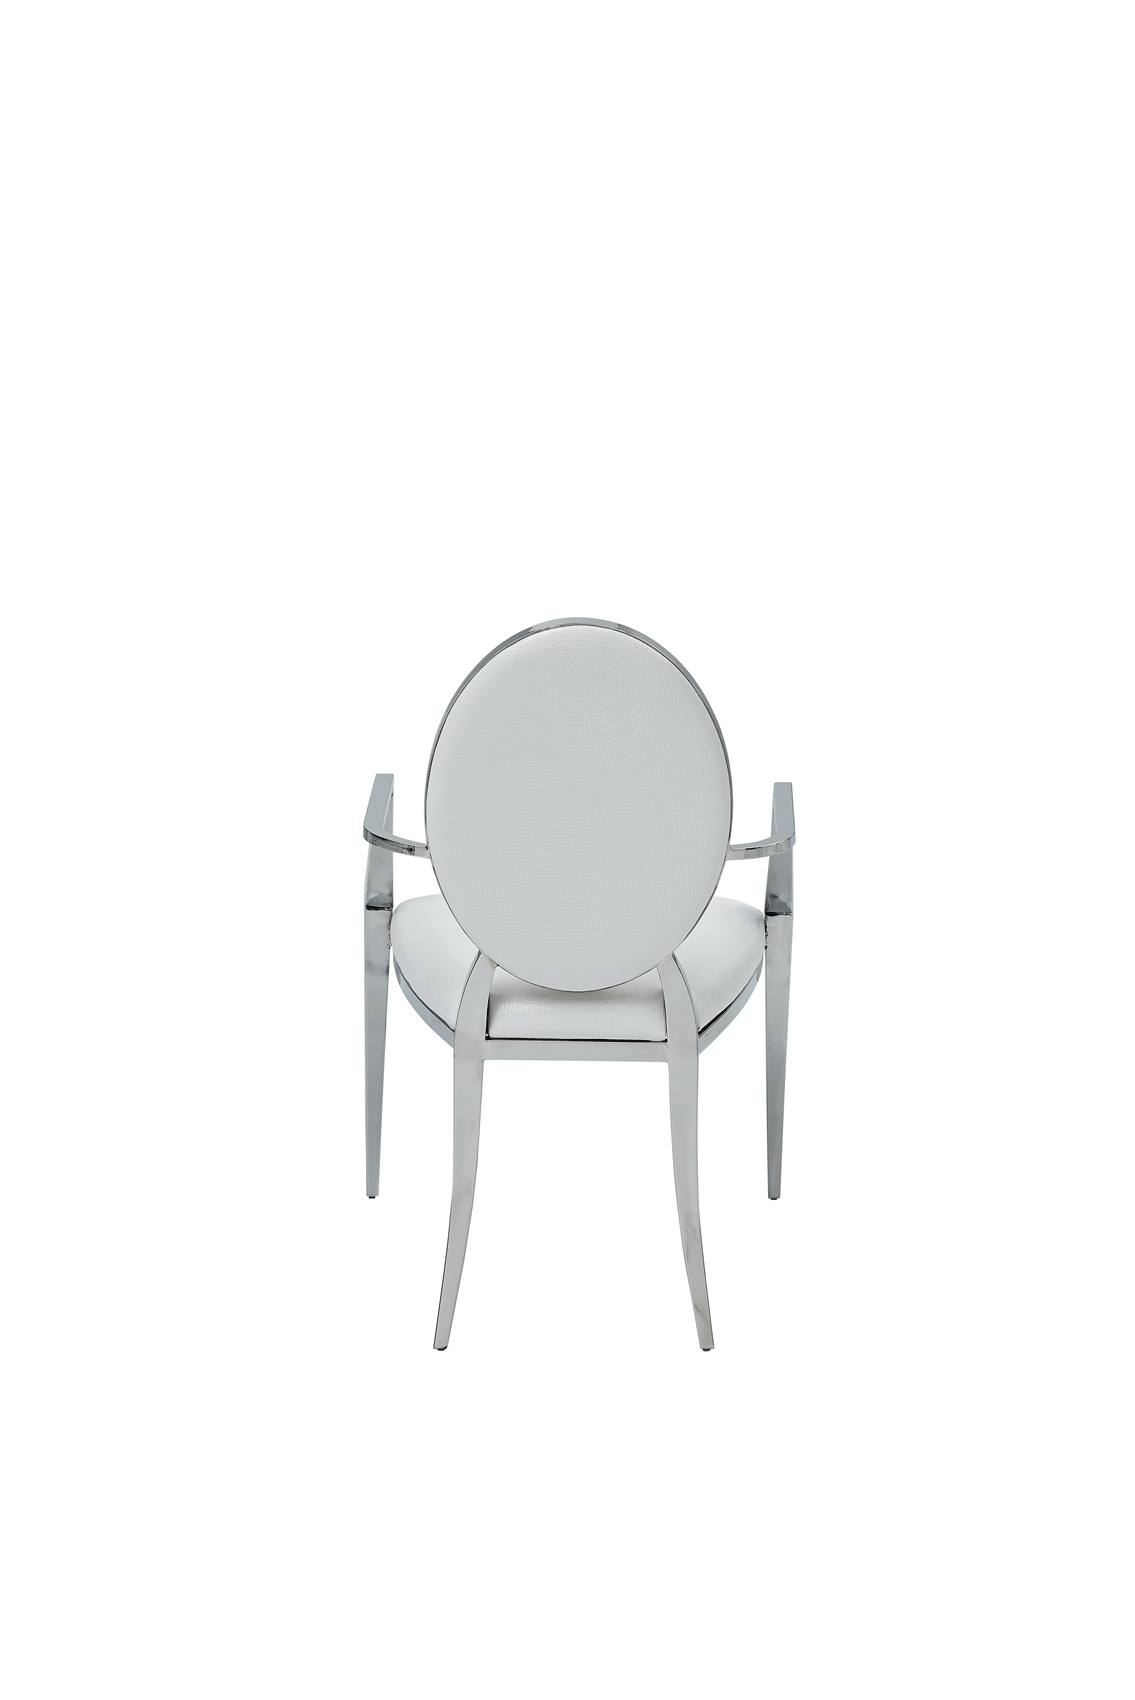 110 Arm Chair White